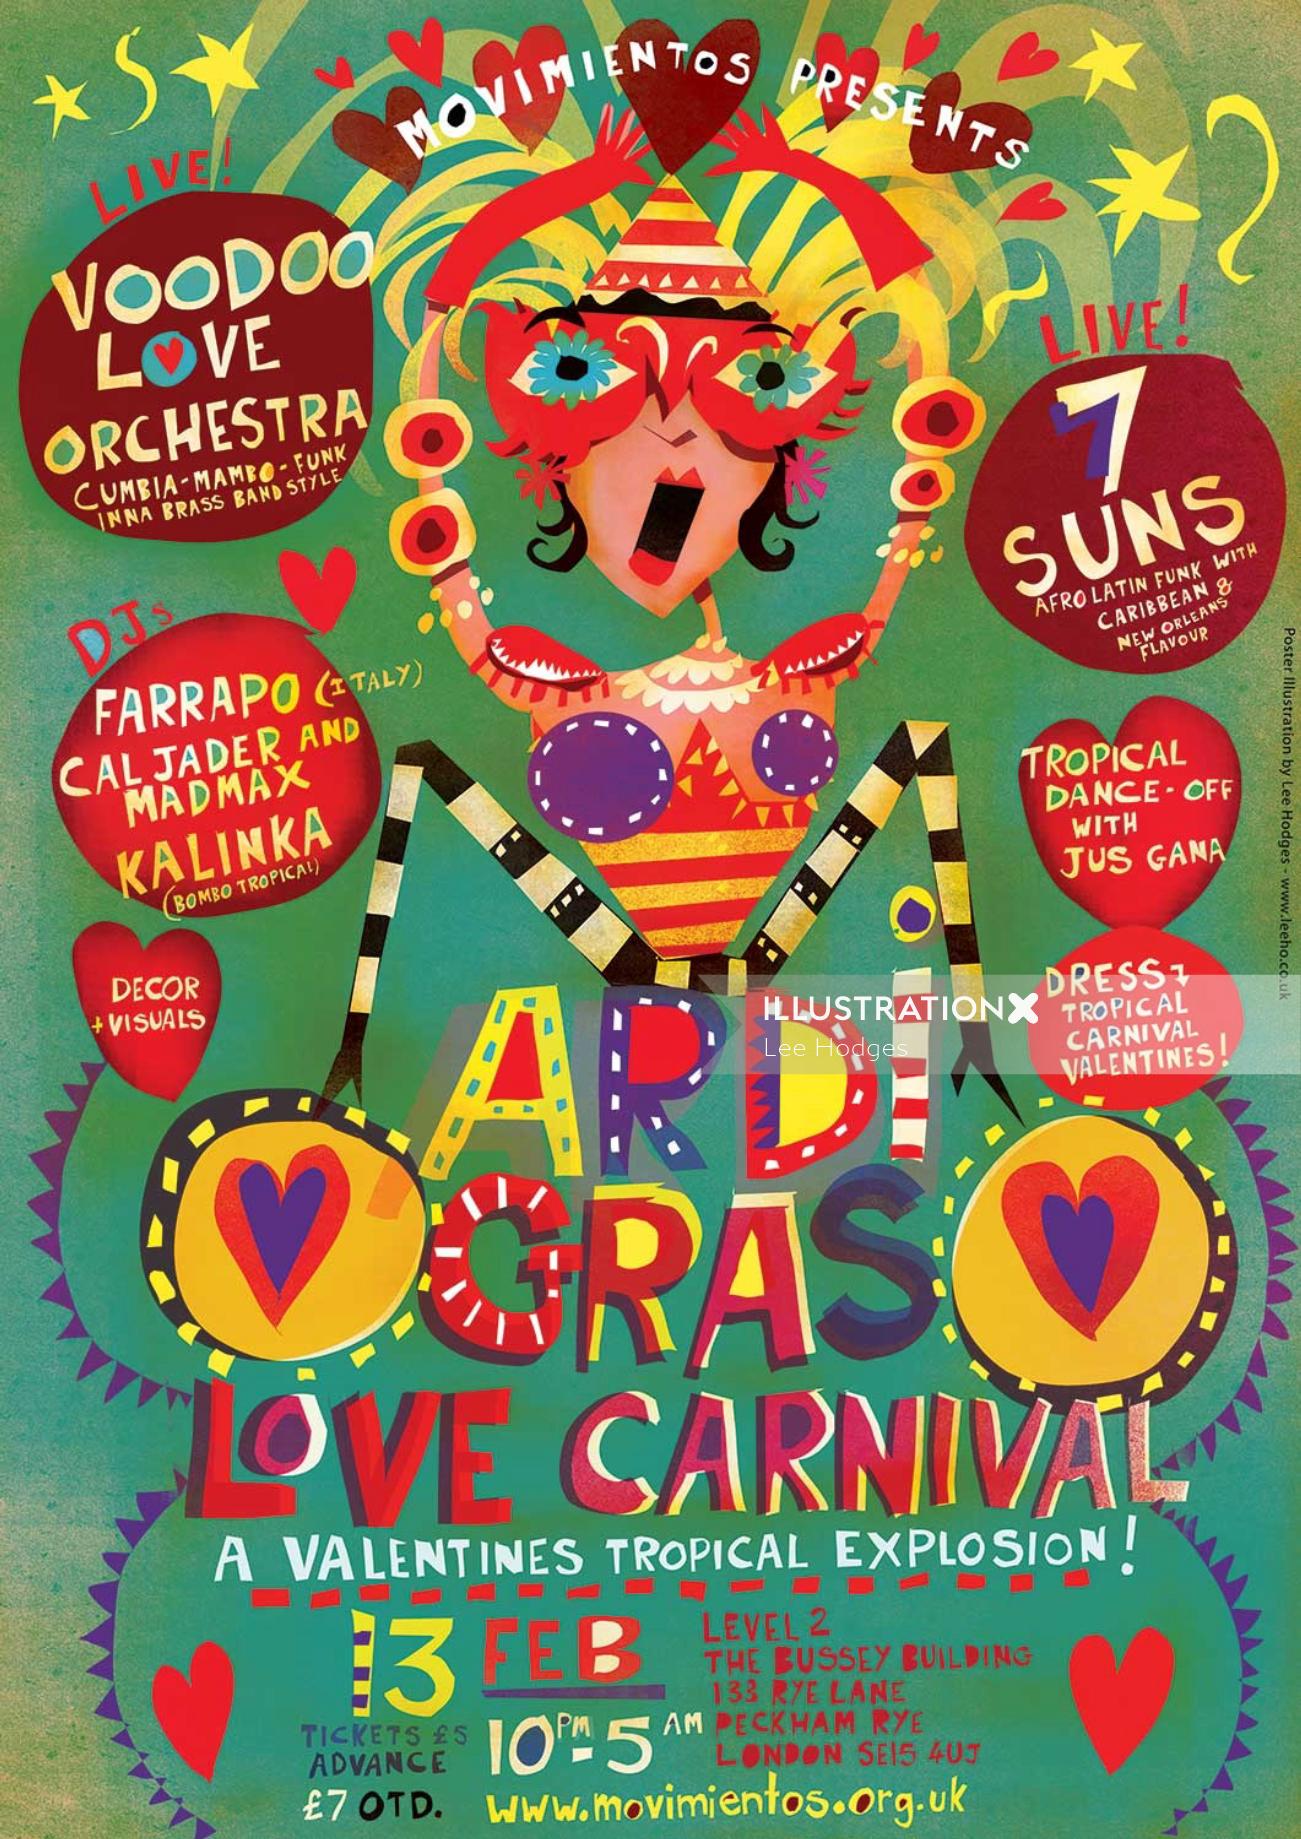 Cartel para el evento Mardi Gras Love Carnival